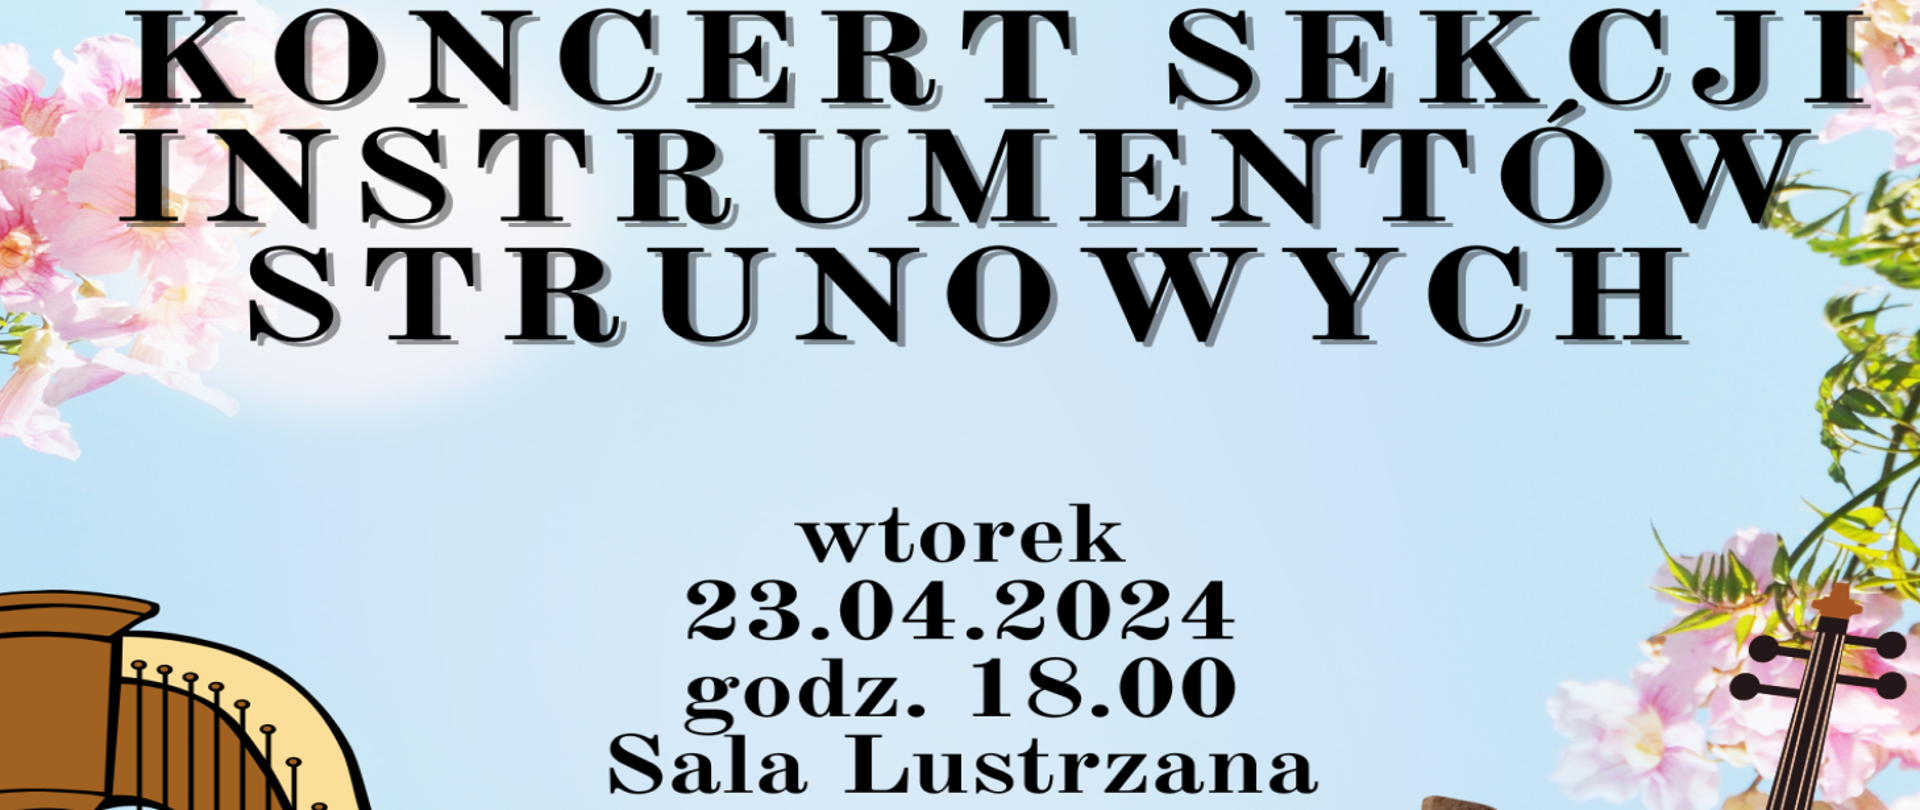 Błękitny baner z napisem Koncert sekcji instrumentów strunowych zawiera termin informacyjny, że odbędzie się on we wtorek, 23.04.2024 r. o godzinie 18 w Sali Lustrzanej Szkoły.
